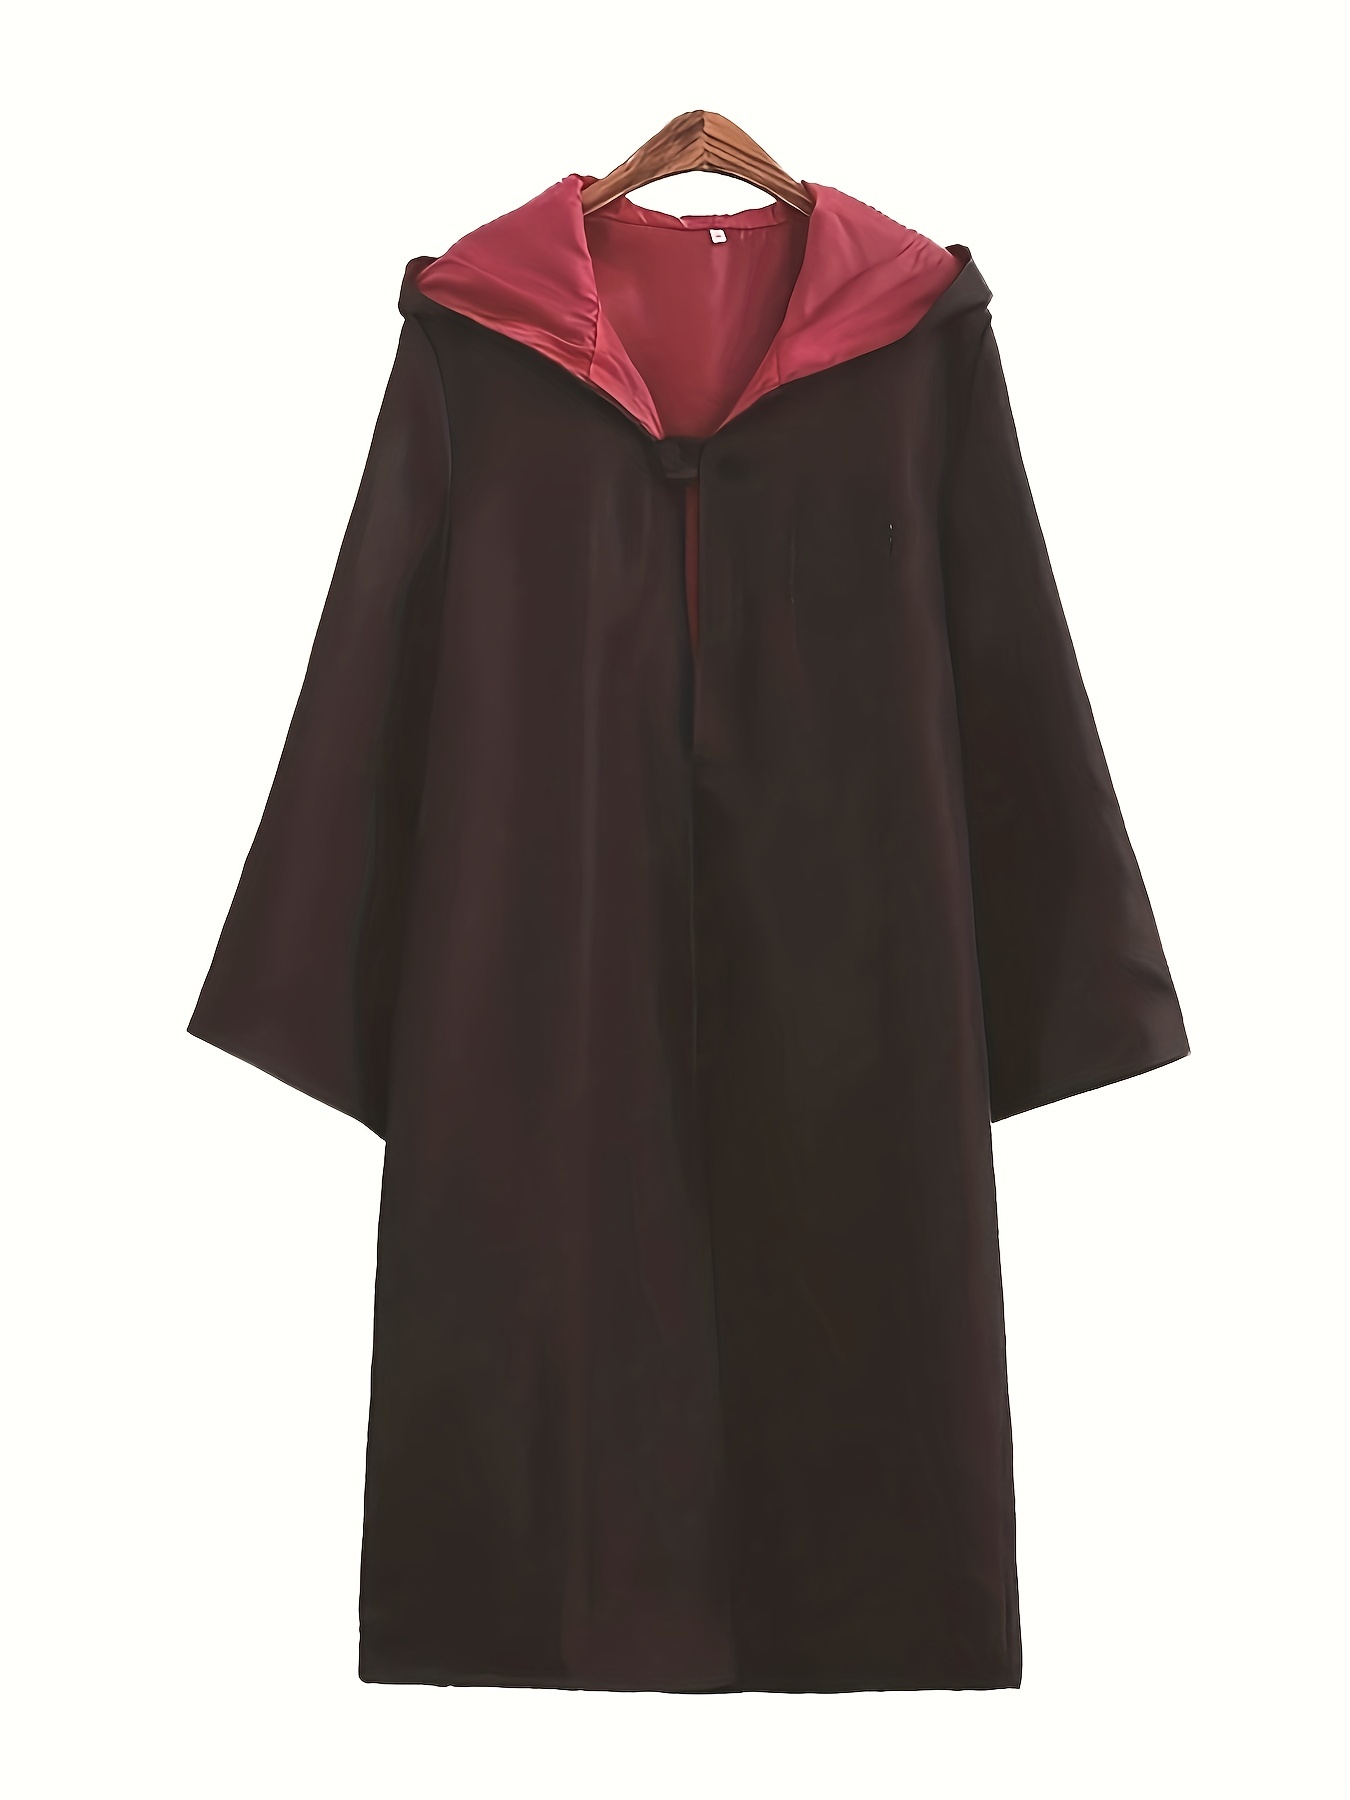 Wizard Robe - Black/Red - Velvet Mage Robe - LARP Costume - Harry